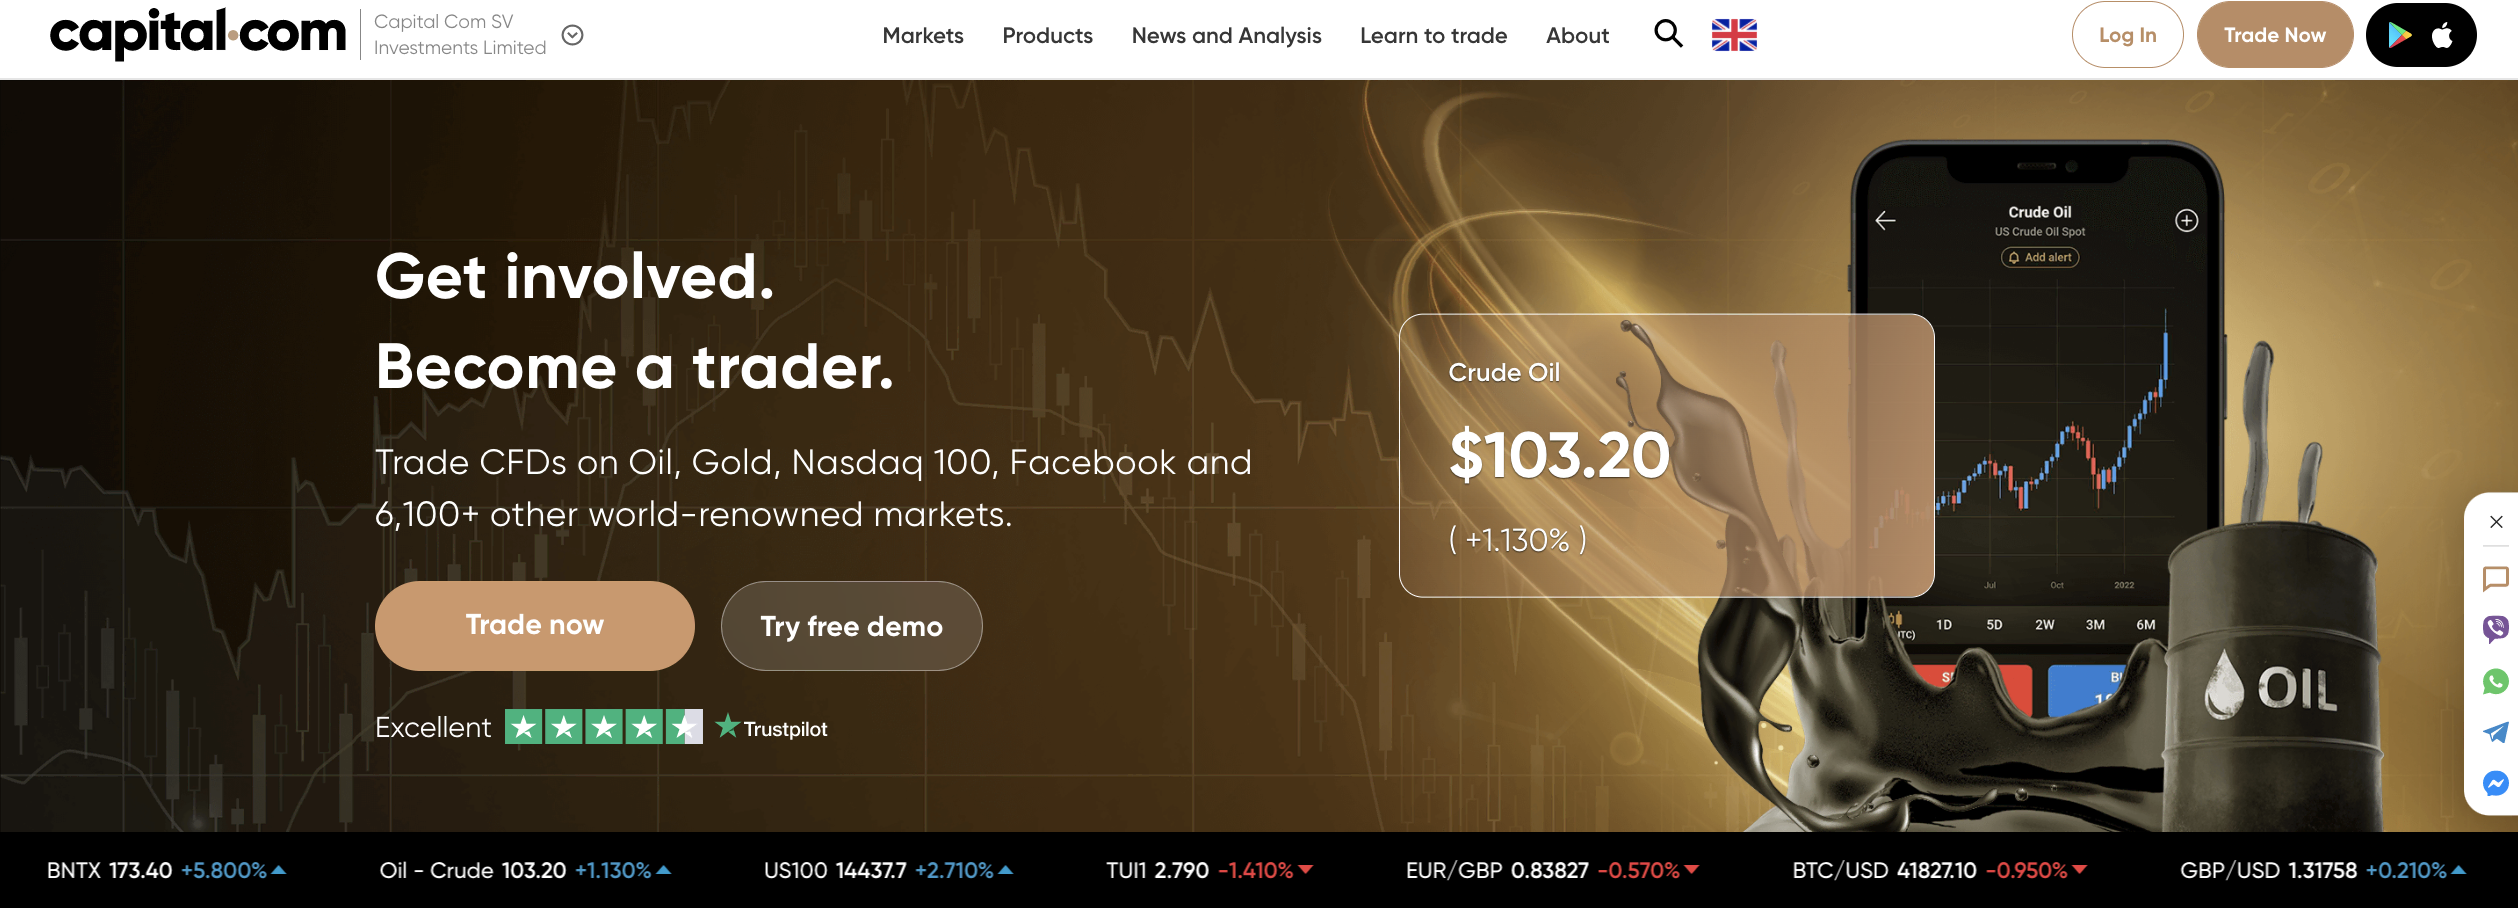 Laman web rasmi broker forex Capital.com